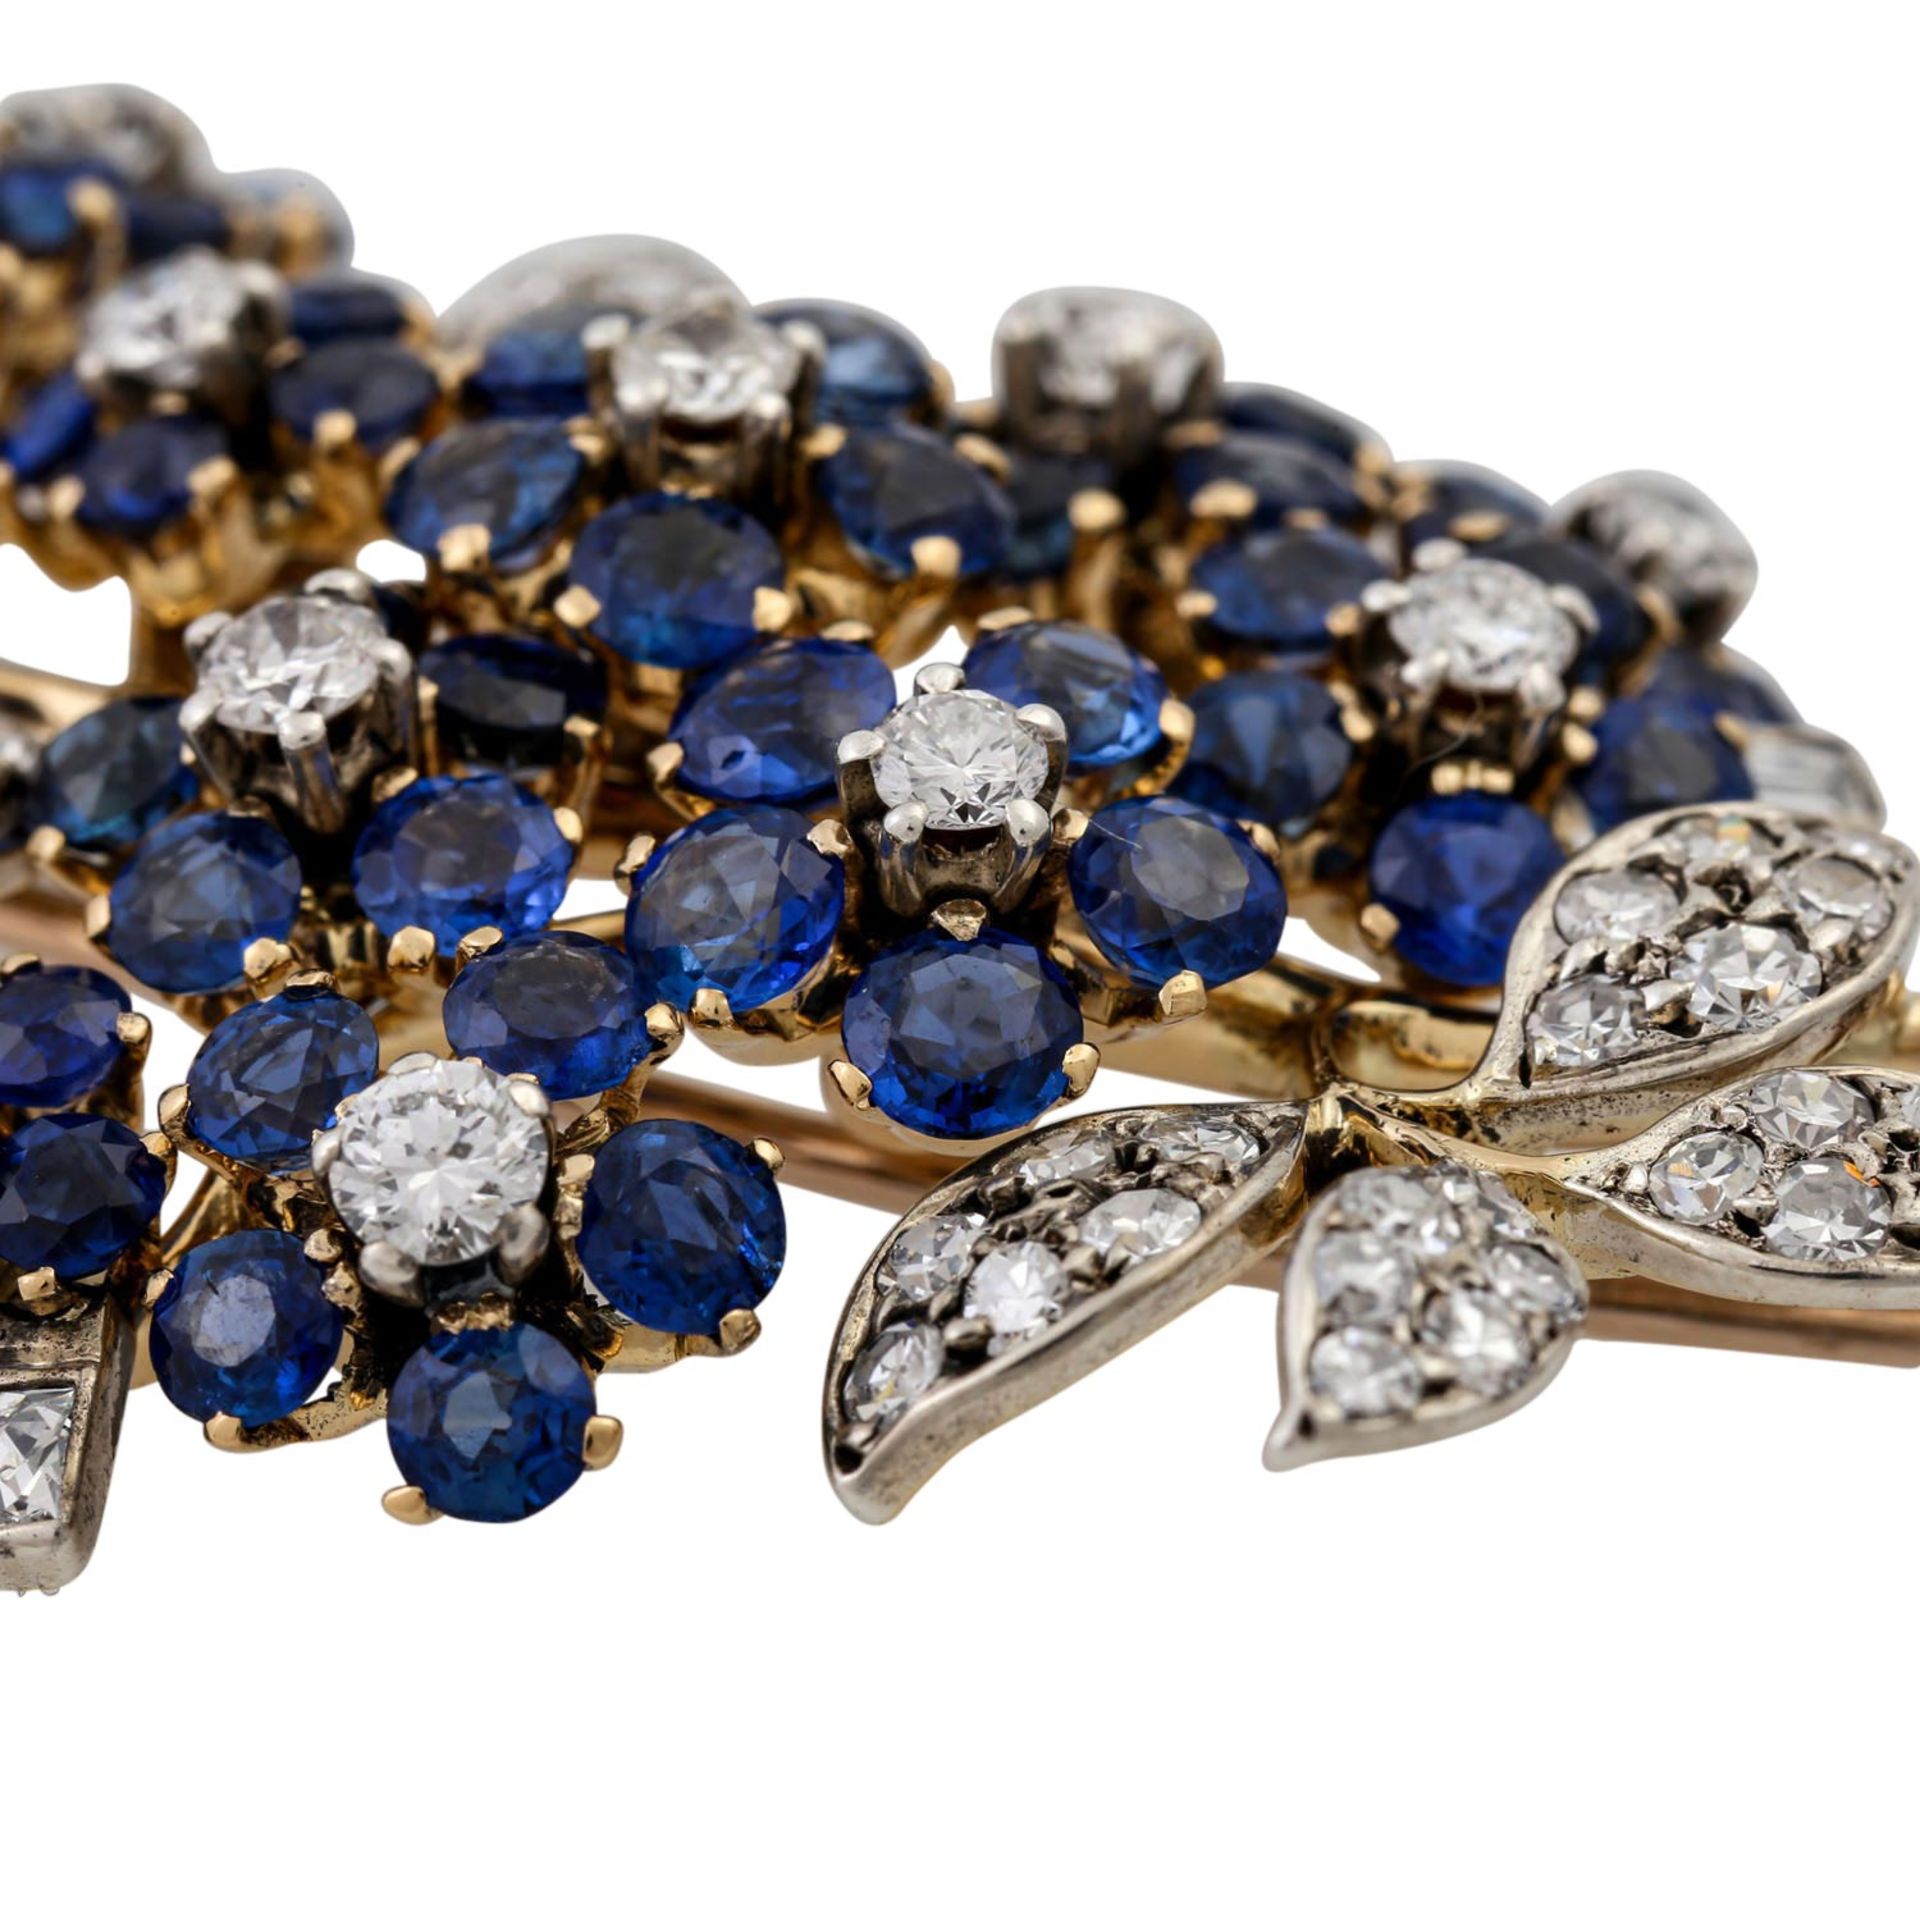 Feine Juwelenbrosche mit Saphiren und Diamanten,WBW (2013): 20.300 €, detailreiche B - Bild 5 aus 5